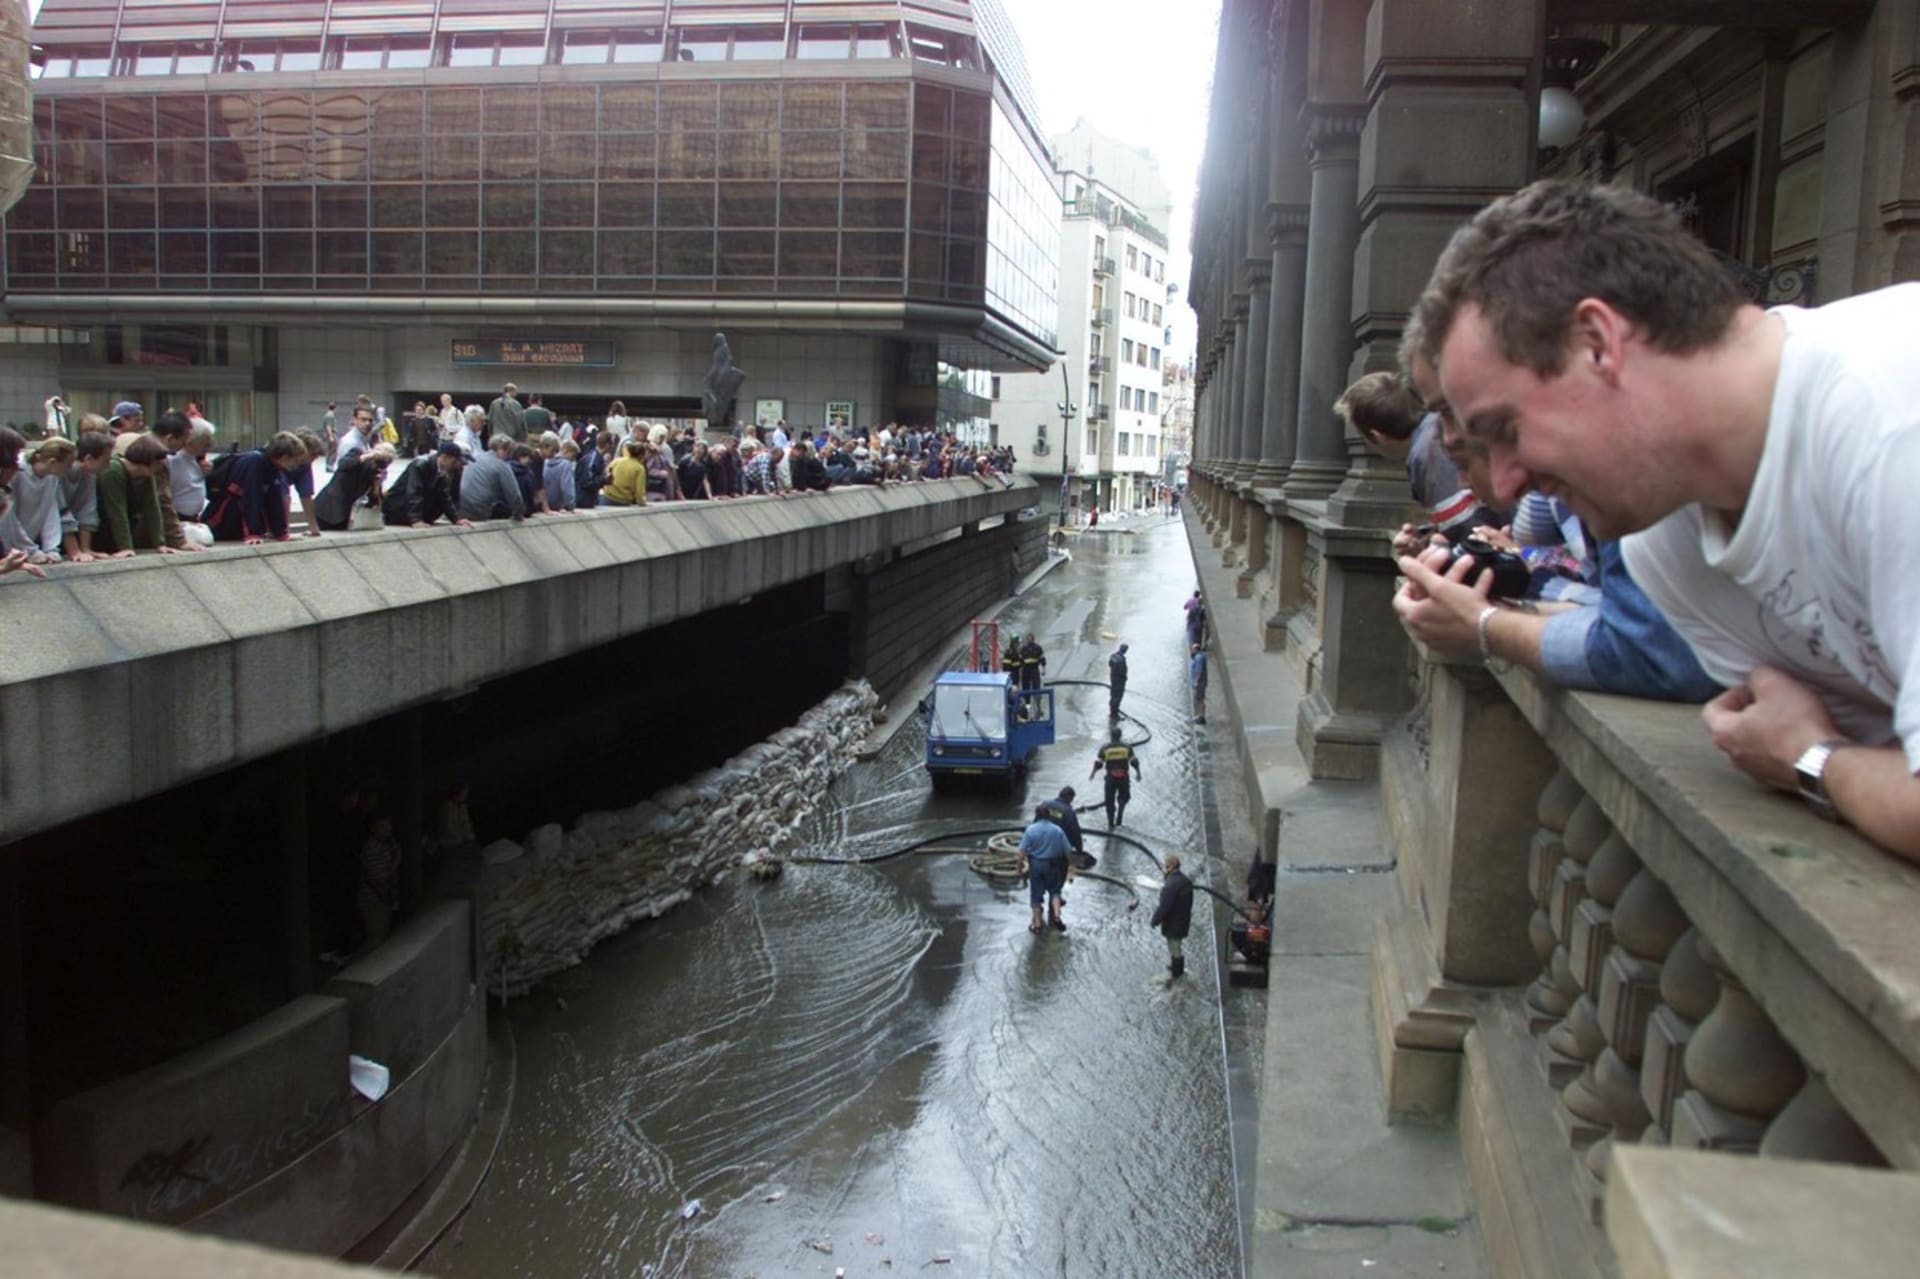 Od nejhorších povodní v české historii je to již 20 let. Snímky zatopené Prahy se staly smutným symbolem.